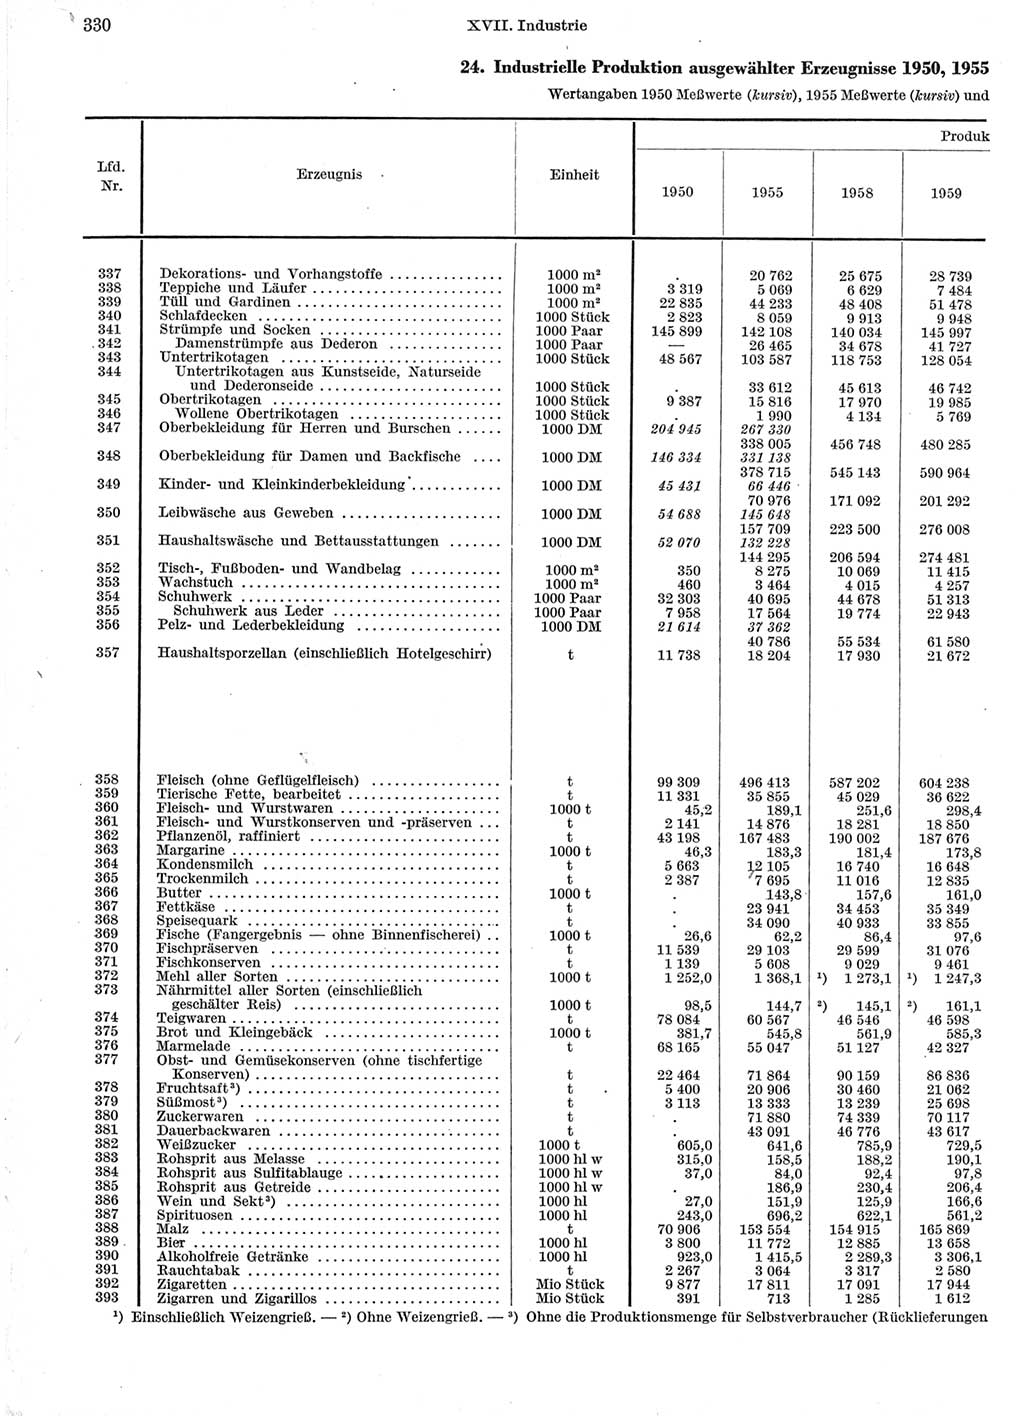 Statistisches Jahrbuch der Deutschen Demokratischen Republik (DDR) 1960-1961, Seite 330 (Stat. Jb. DDR 1960-1961, S. 330)